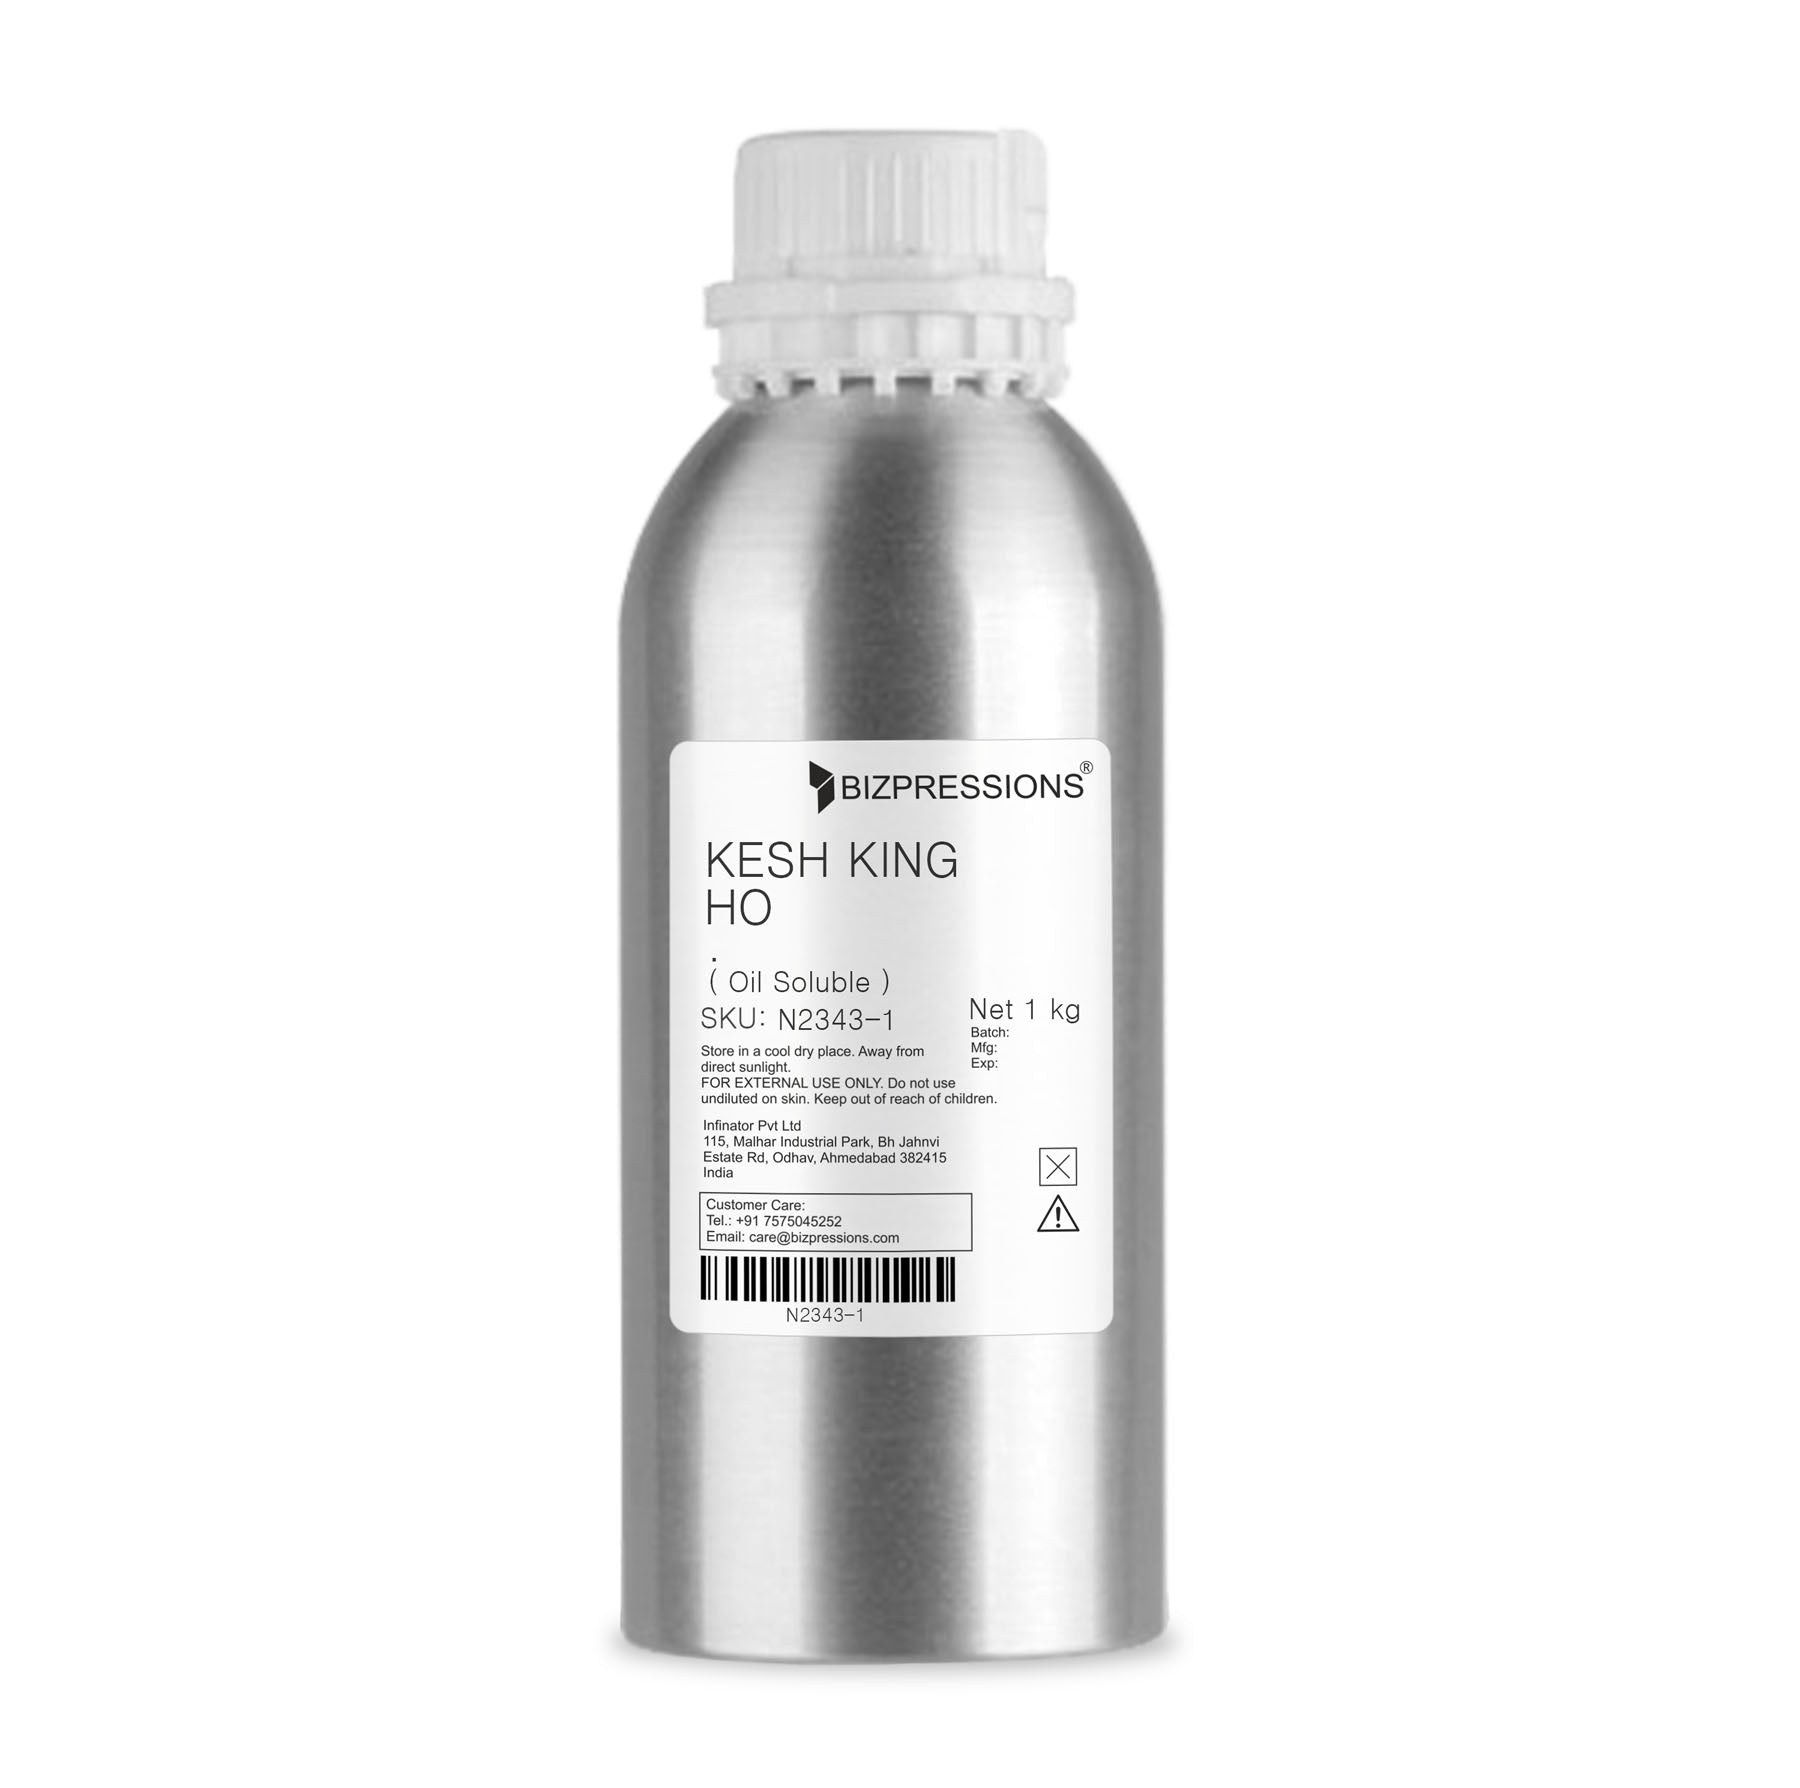 KESH KING HO - Fragrance ( Oil Soluble ) - 1 kg